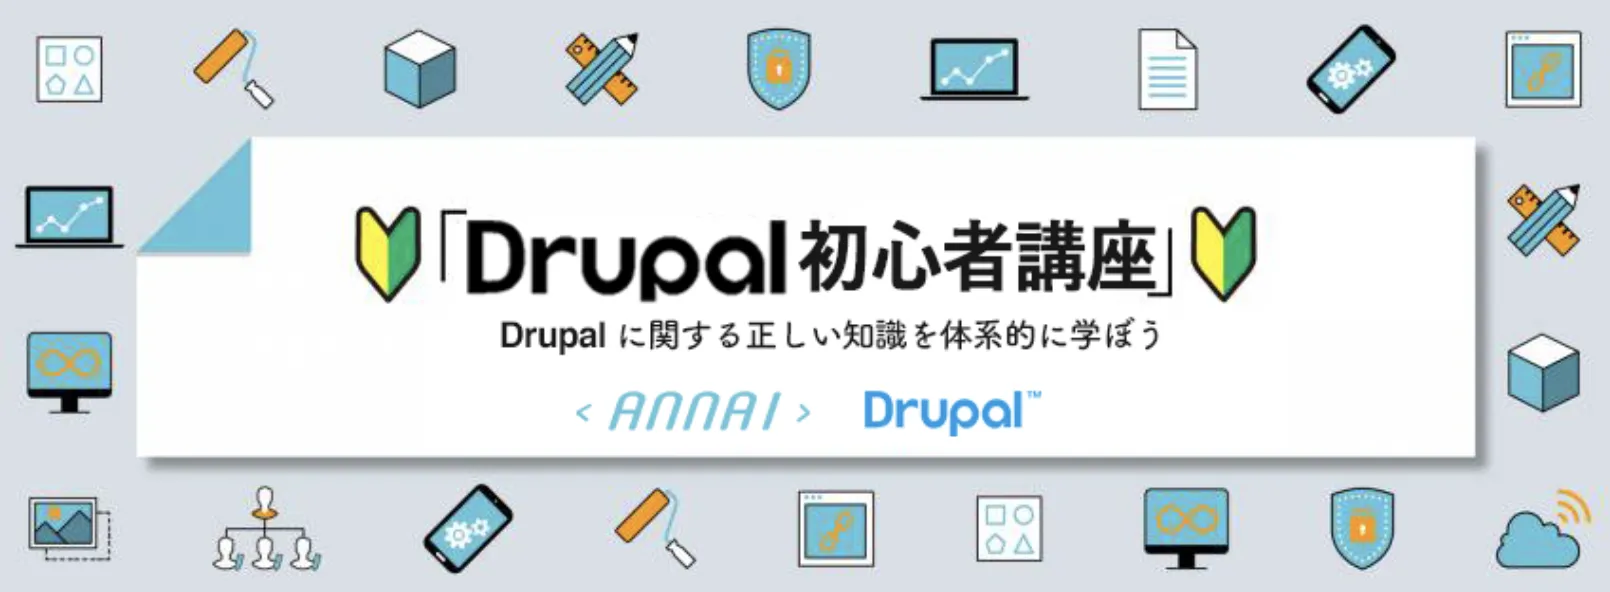 第 9 回 Drupal のブロックシステム